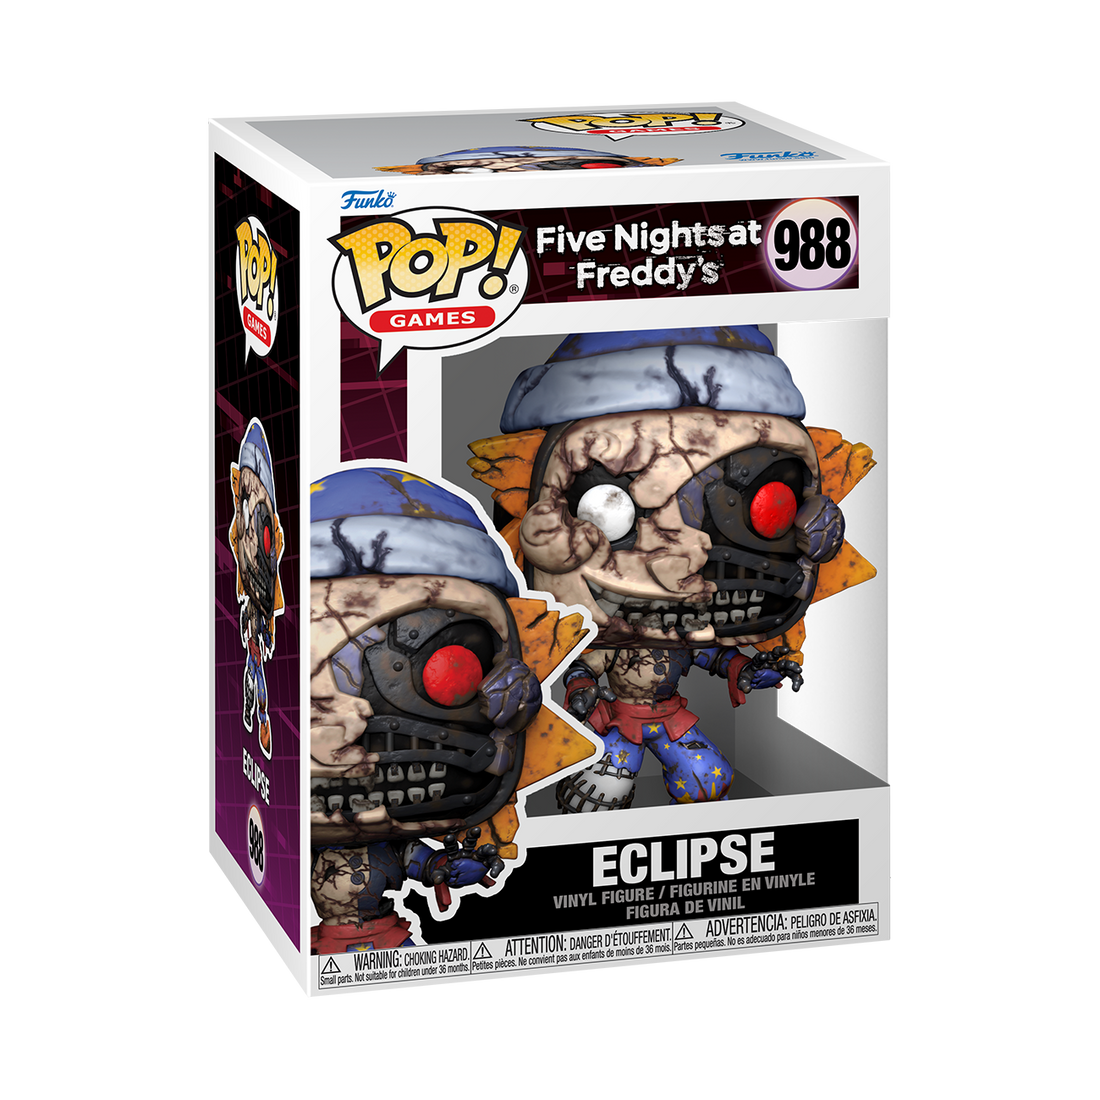 Funko Pop! Games Five Nights at Freddy's 988 Eclipse Funko